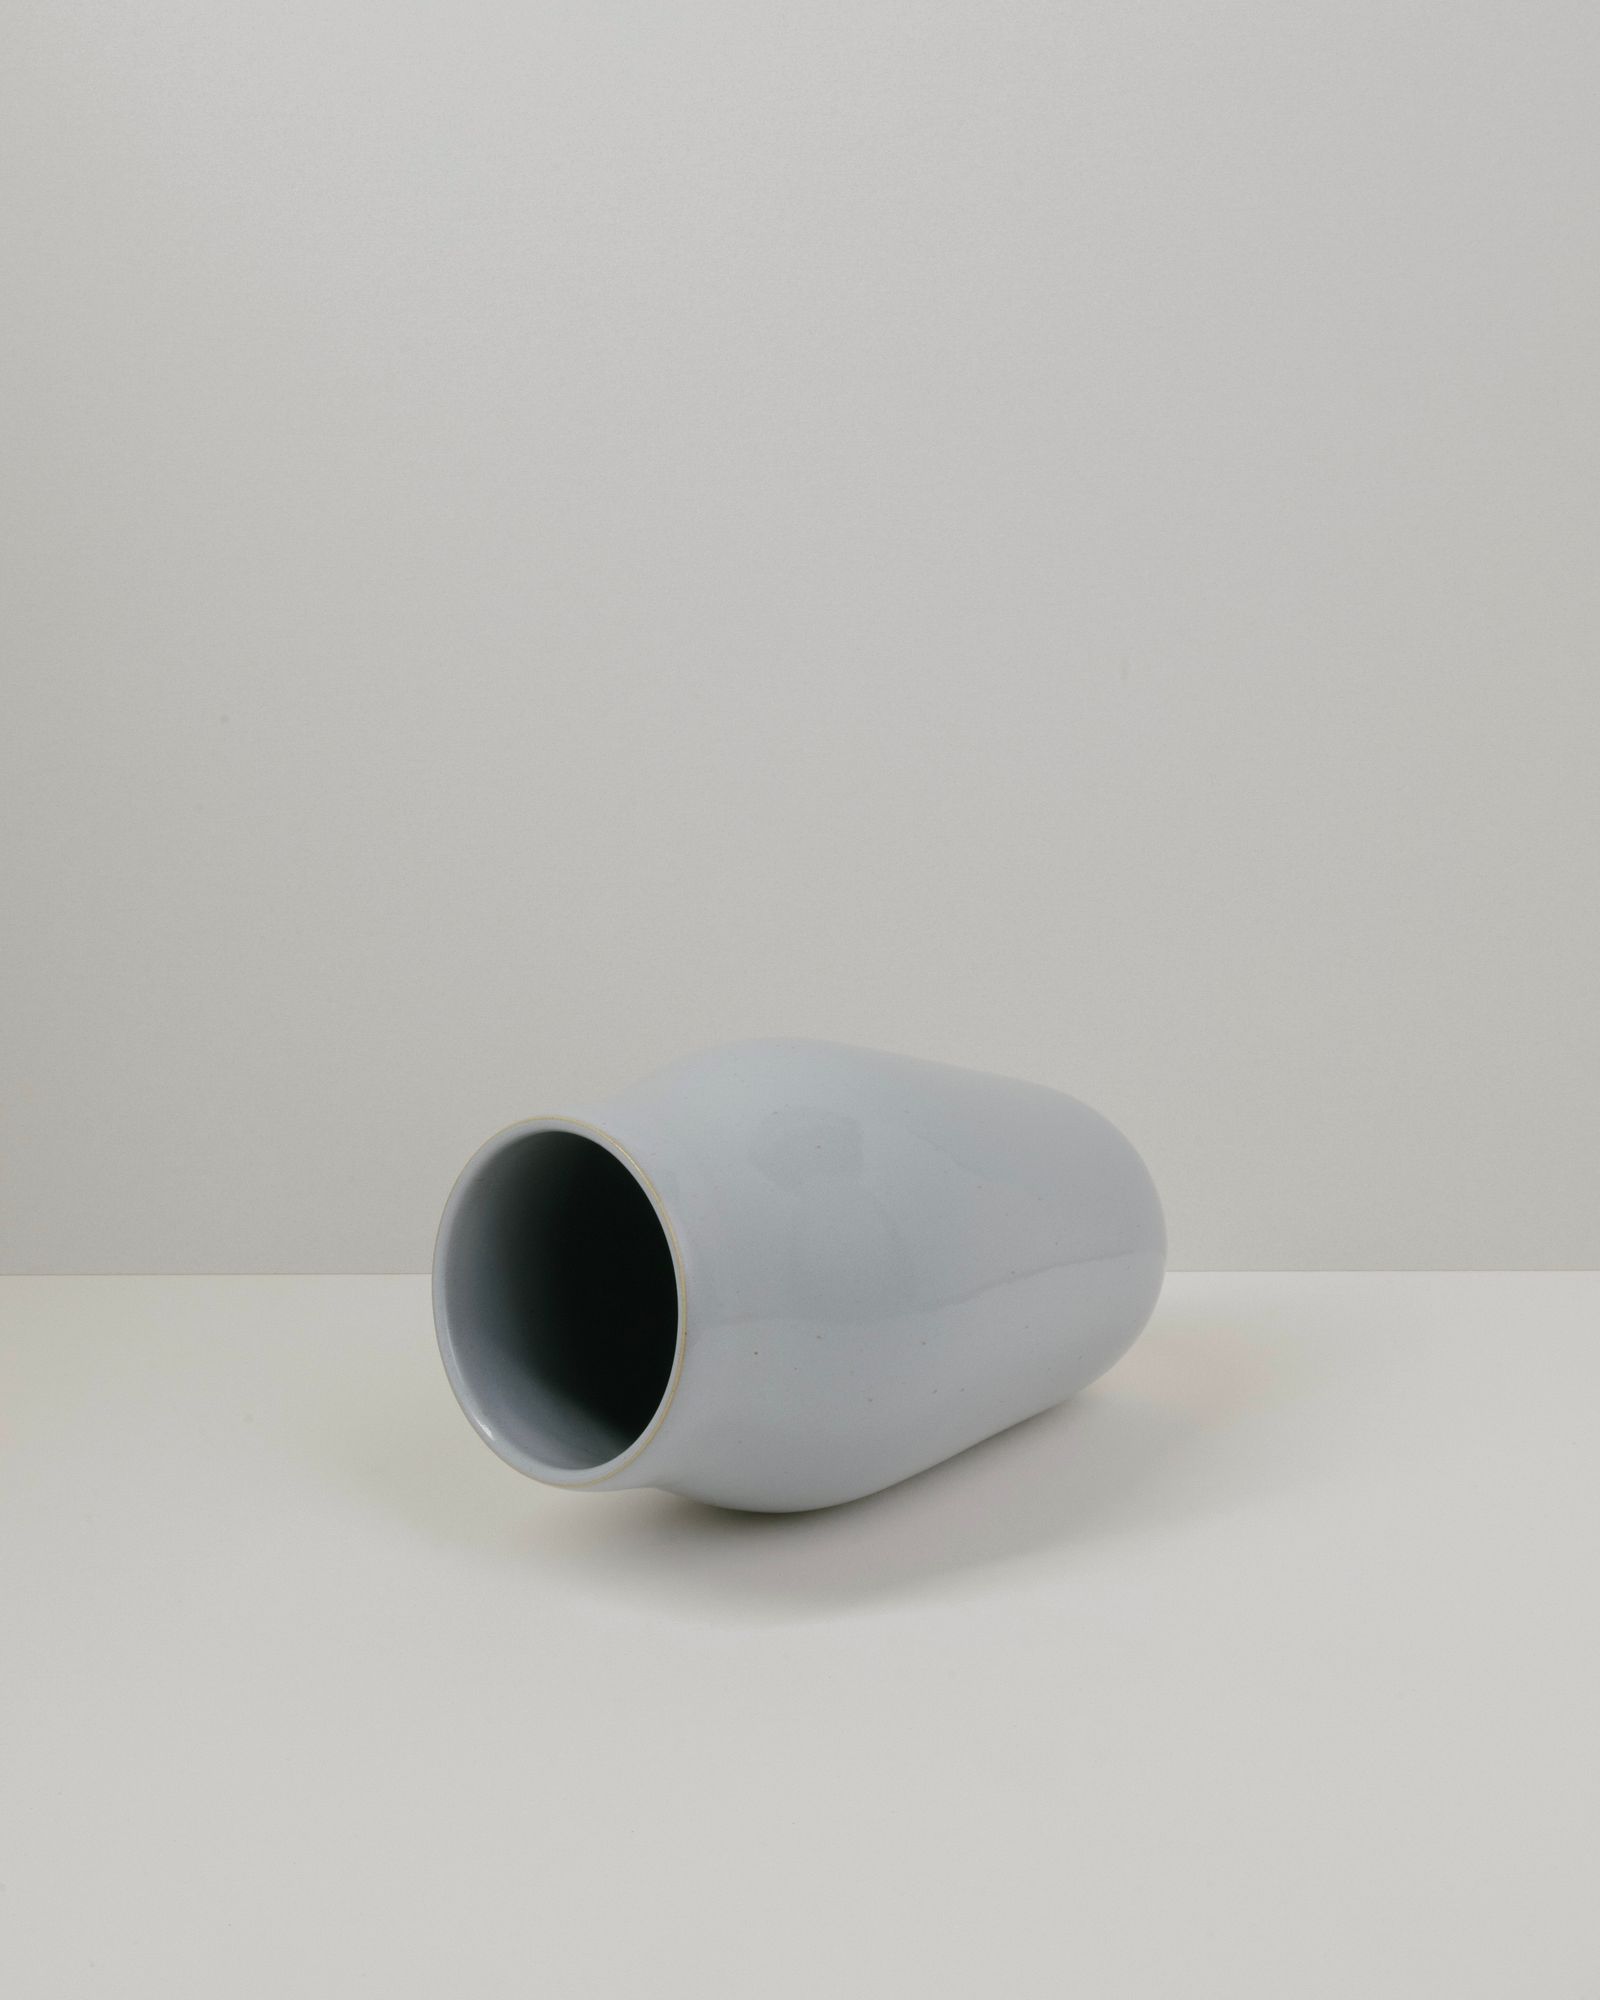 Vase 01